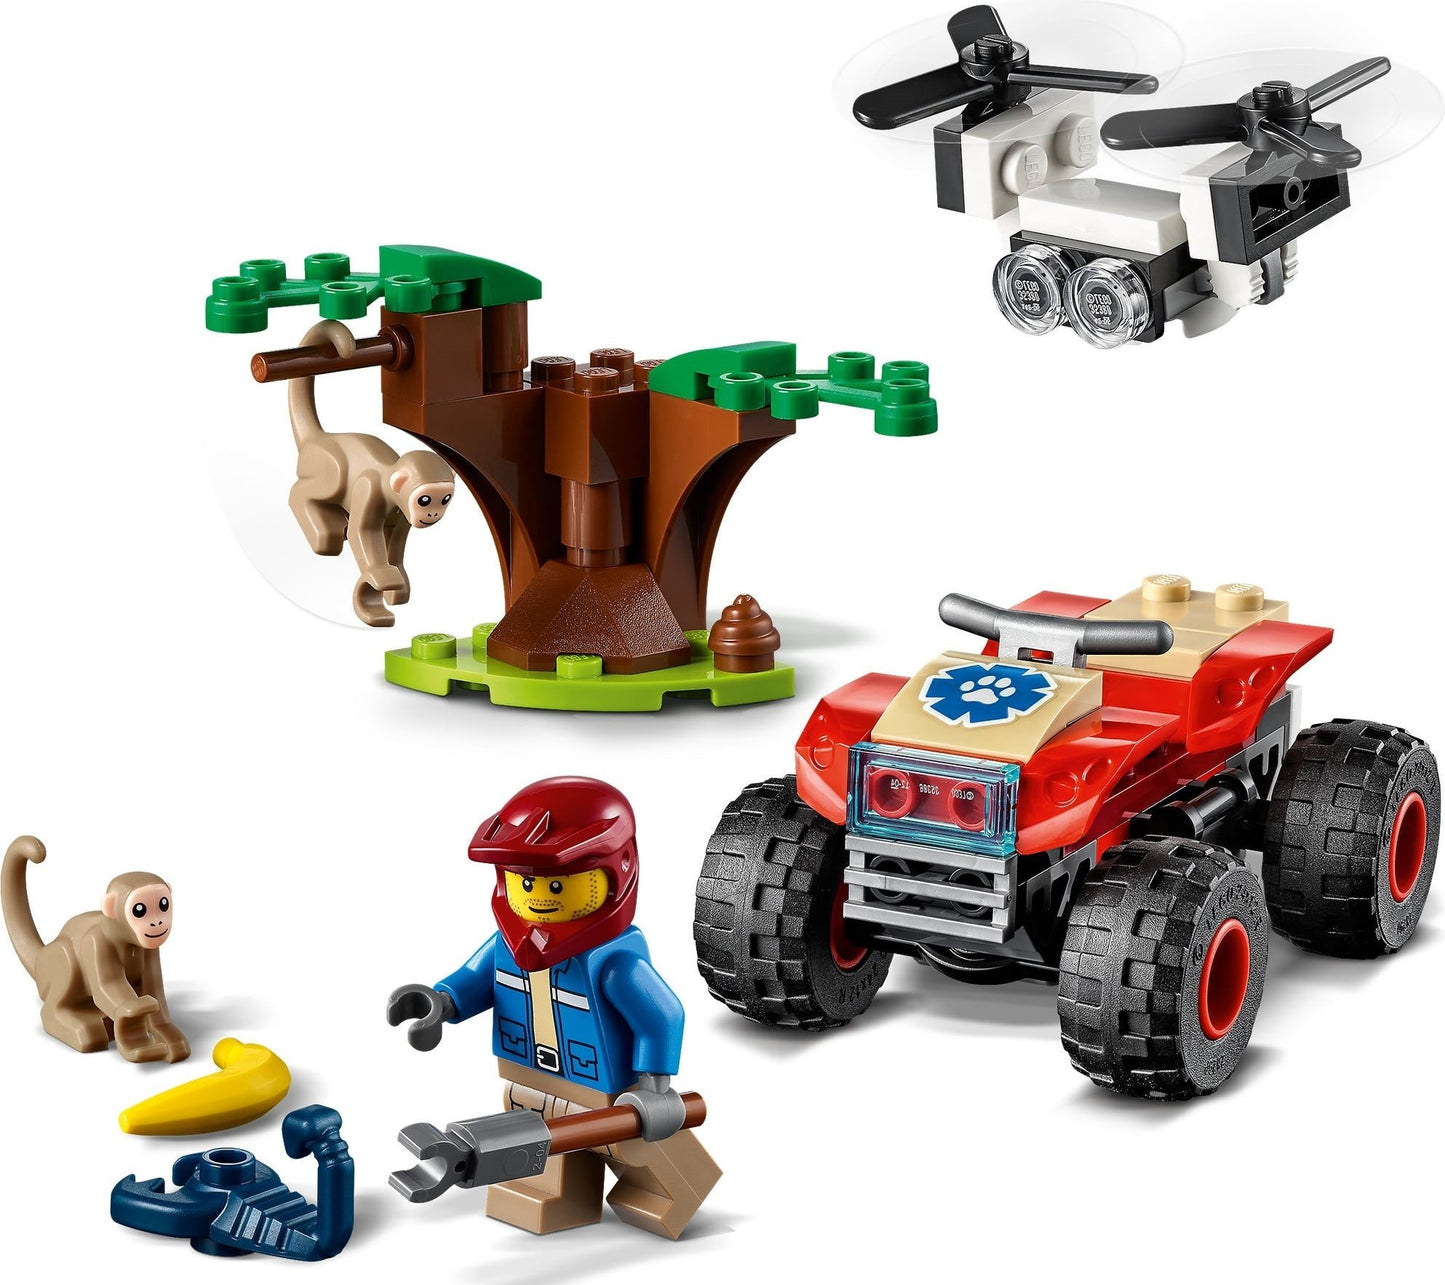 LEGO City  - ATV de salvare a animalelor salbatice